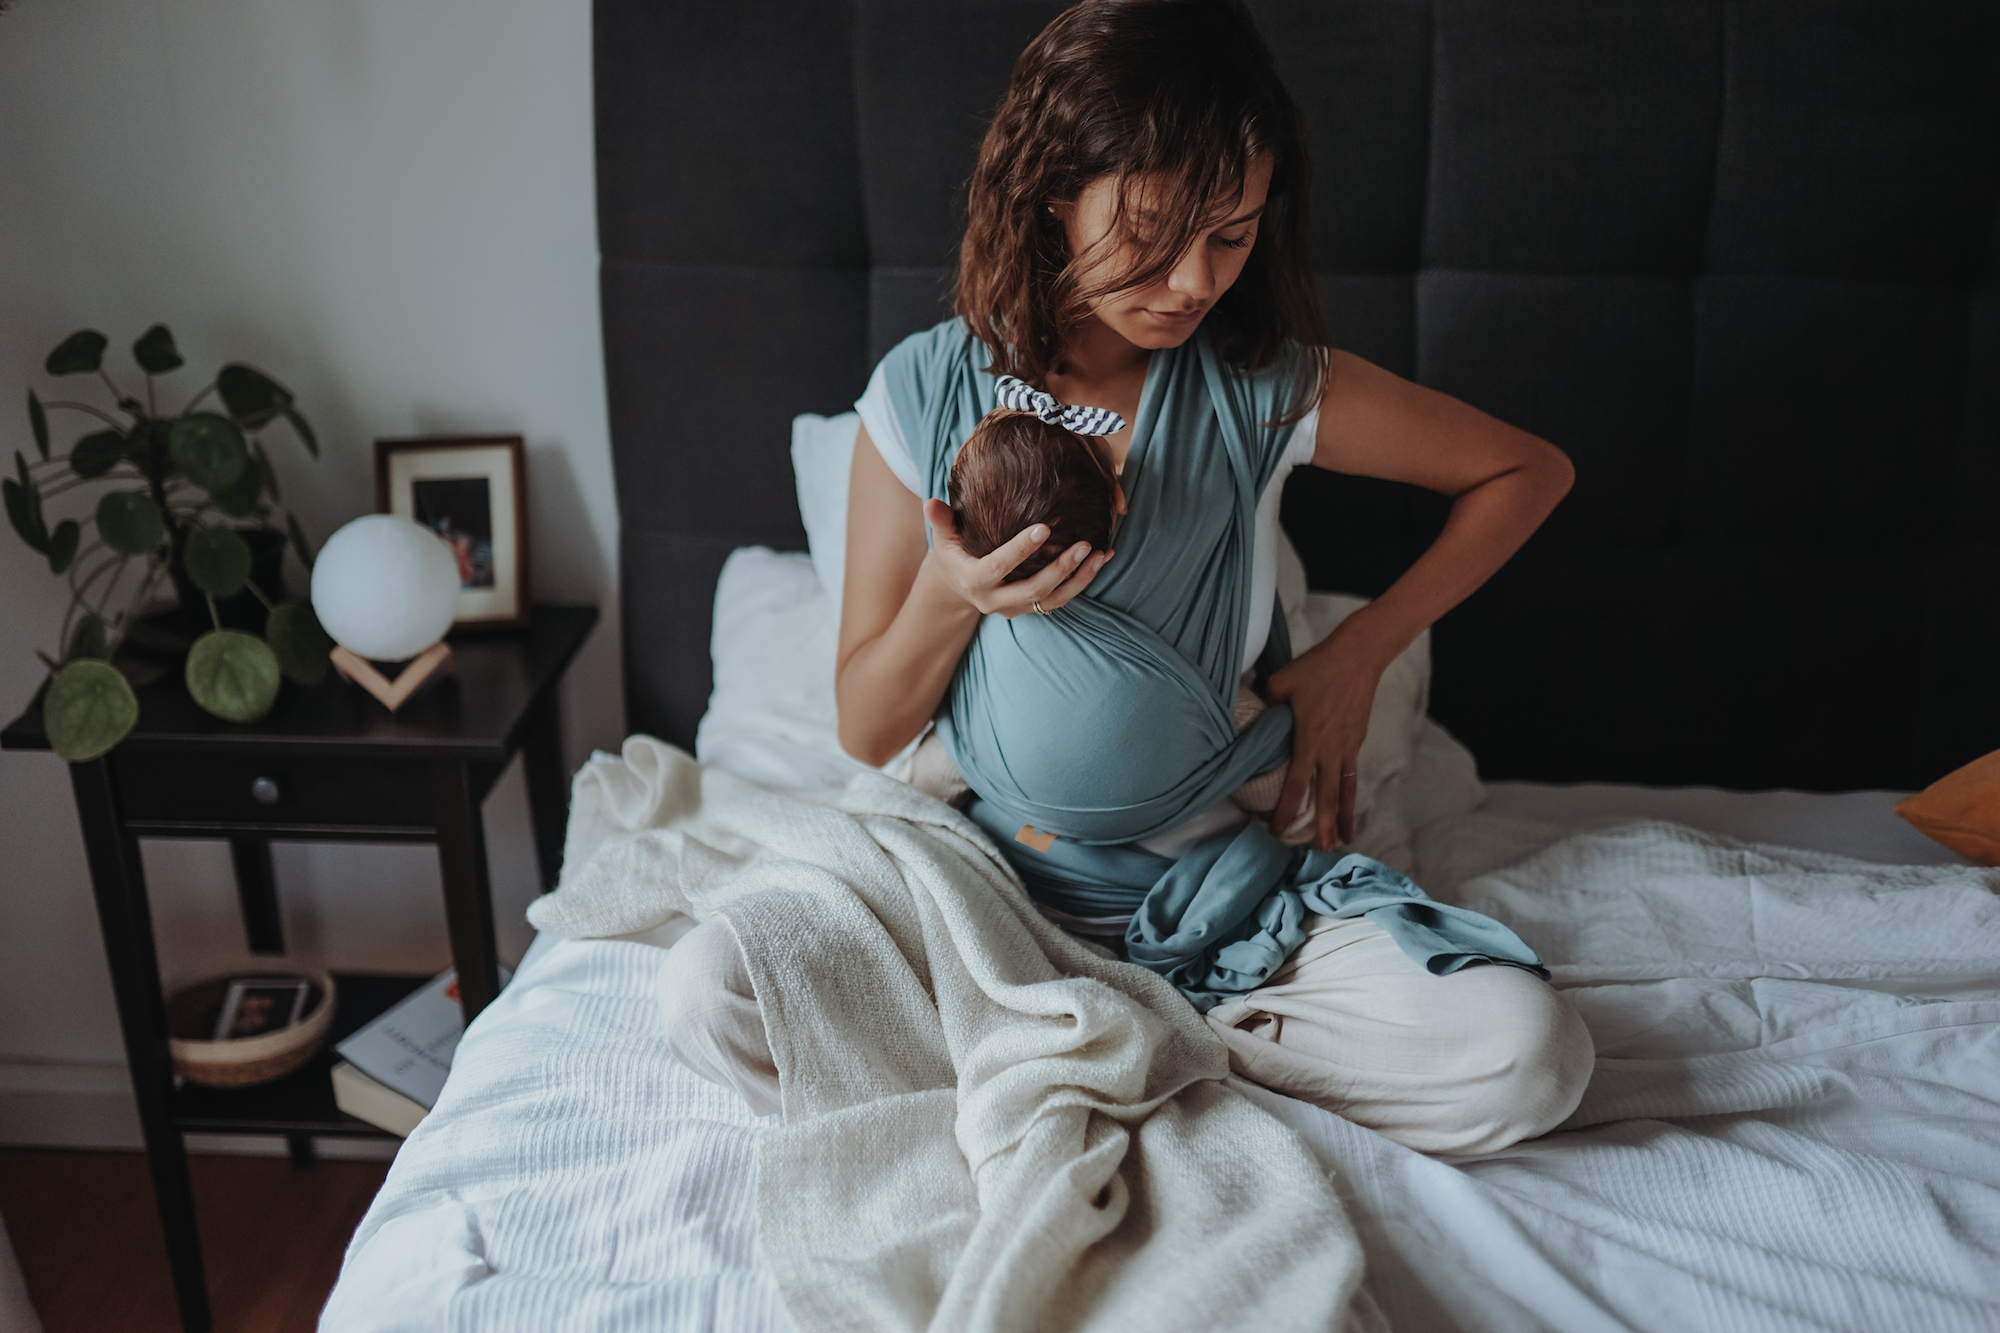 Auf diesem Bild siehst Du eine Mama, die auf dem Bett sitzt und ihr Neugeborenes im Tragetuch an sich trägt. Der Blogartikel handelt von nützlichen Tipps rund um das Thema Beckenboden.